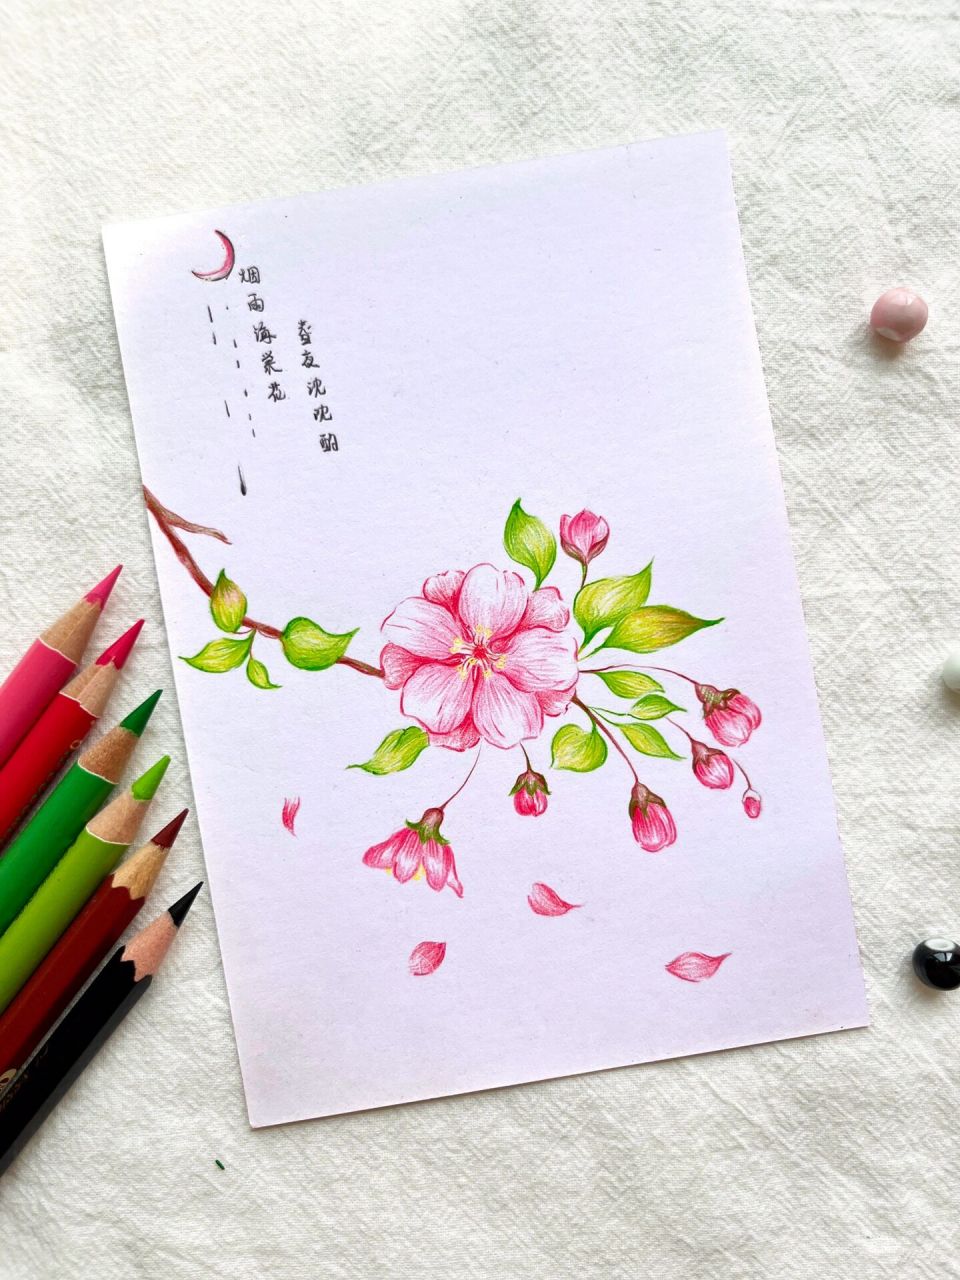 海棠花画法简单图片